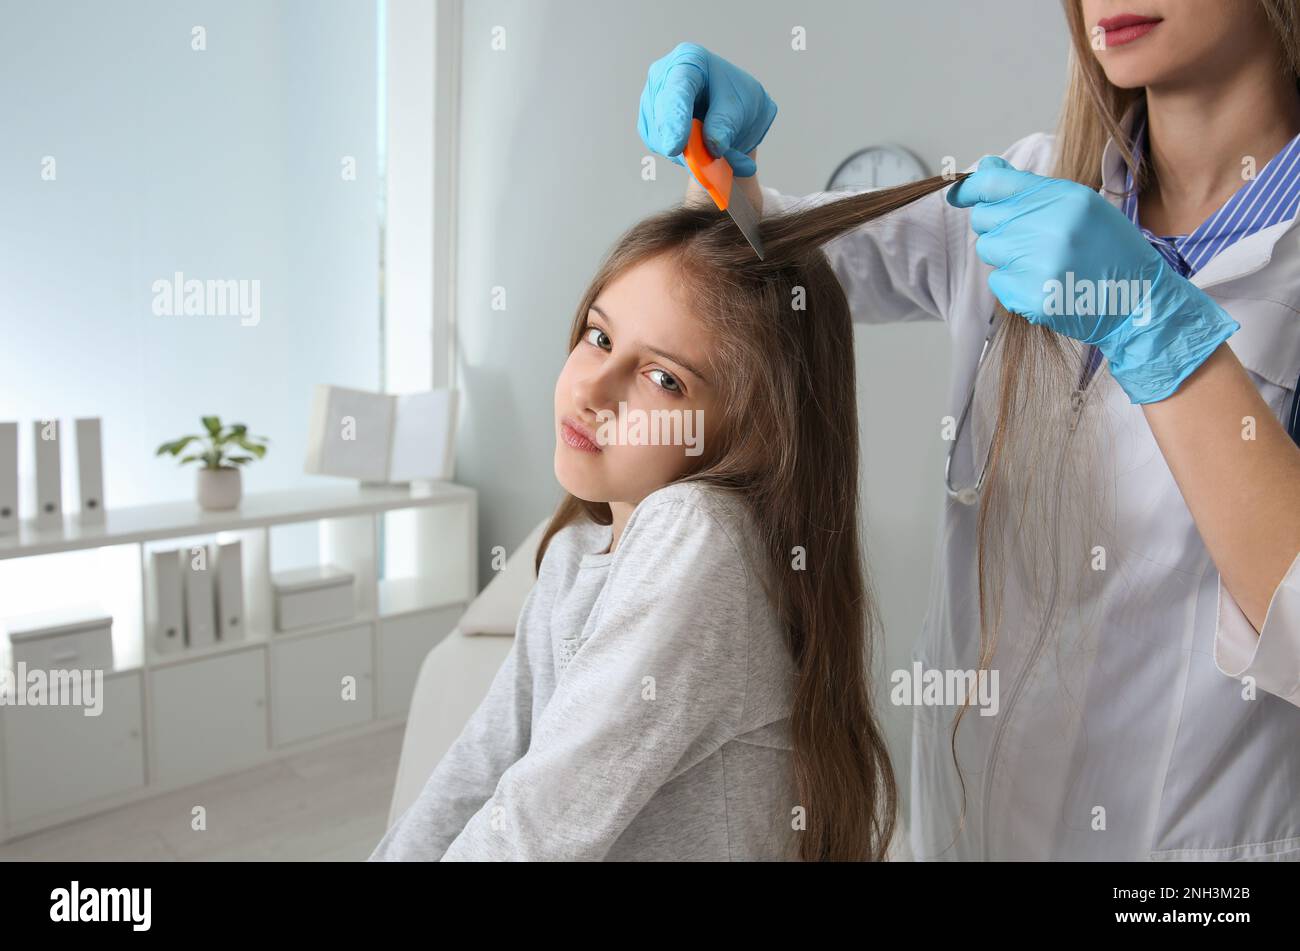 Medico che usa il pettine nit sui capelli della ragazza in clinica. Trattamento antighiaccio Foto Stock